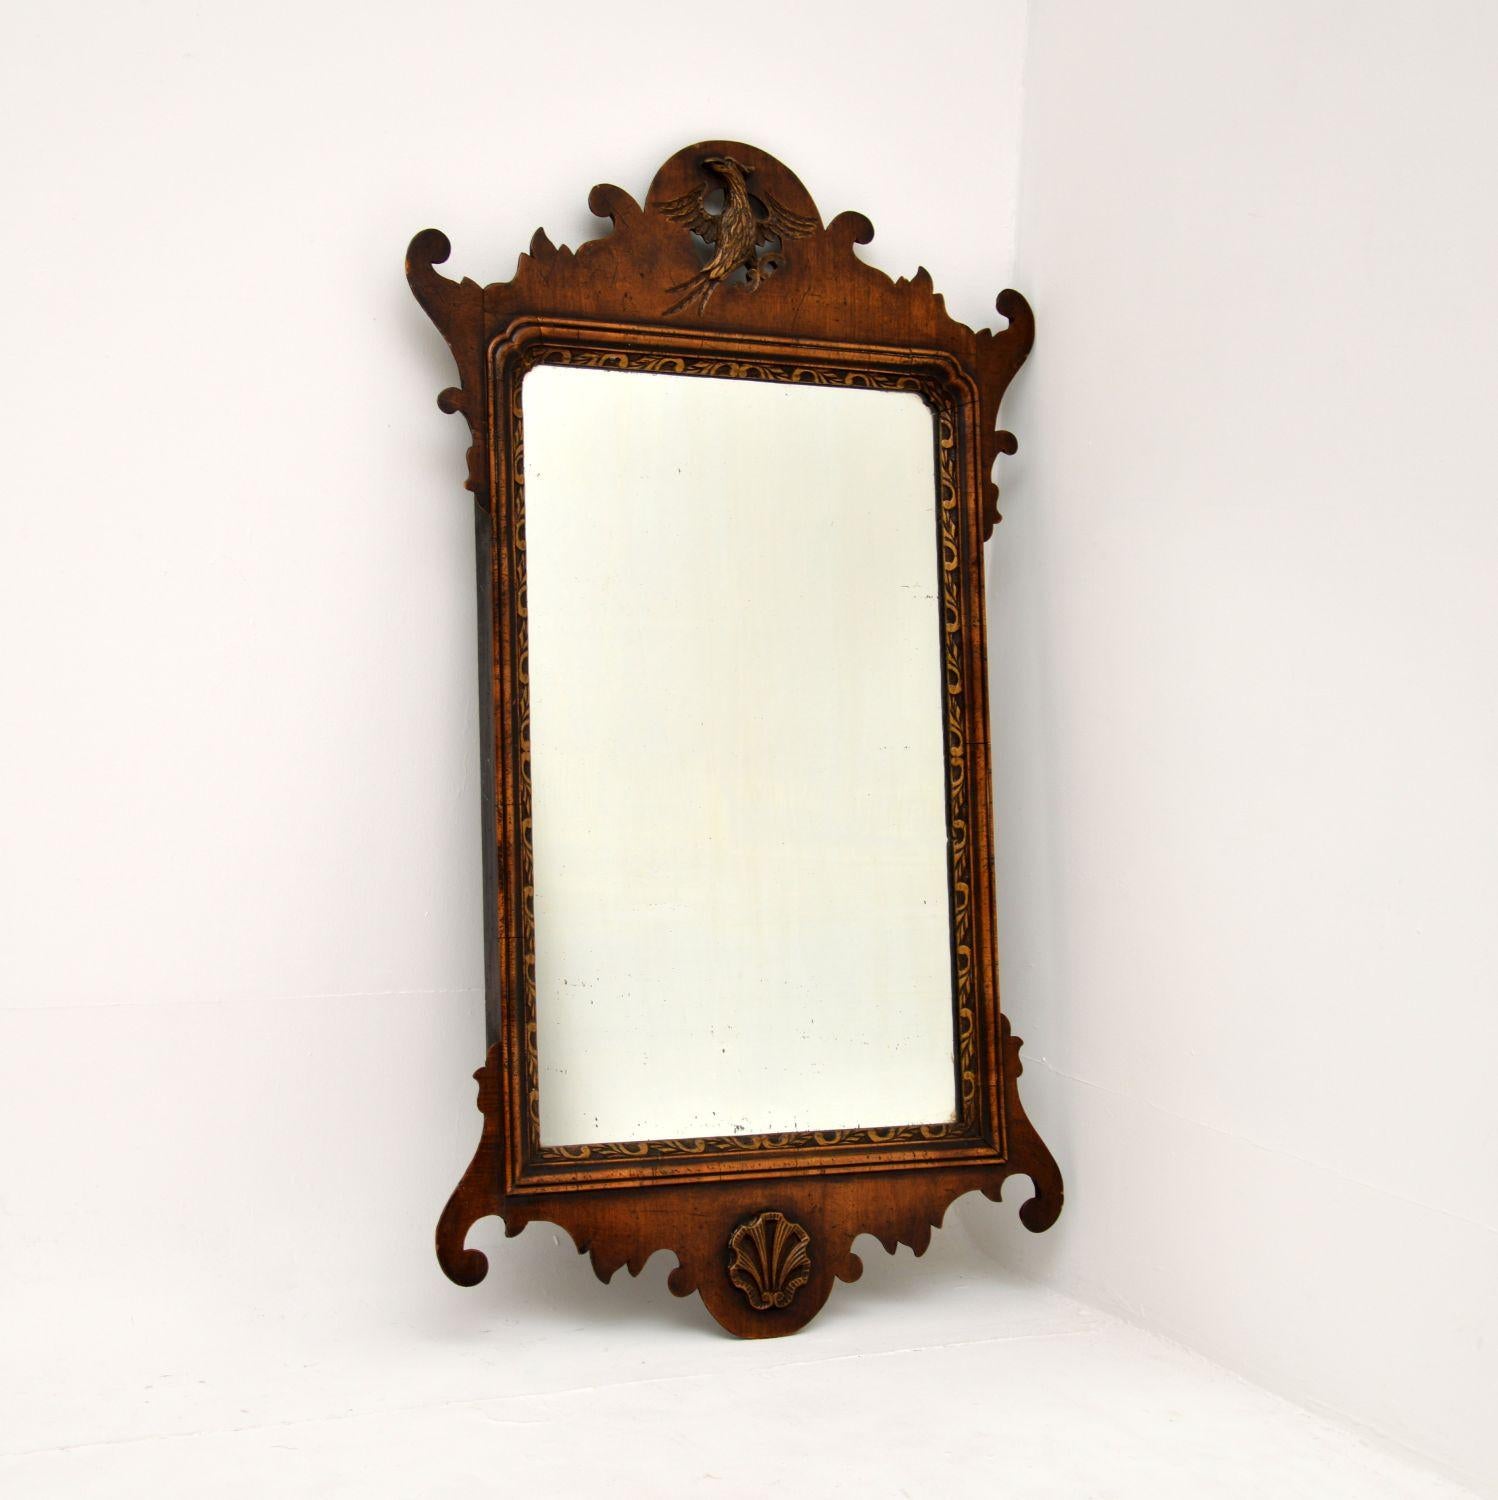 Eine atemberaubende Original antiken georgianischen Zeit geschnitzt Walnuss Spiegel. Sie wurde in England hergestellt und stammt aus der Zeit zwischen 1790 und 1810.

Es ist wunderschön gestaltet und von erstaunlicher Qualität. Der Rahmen hat